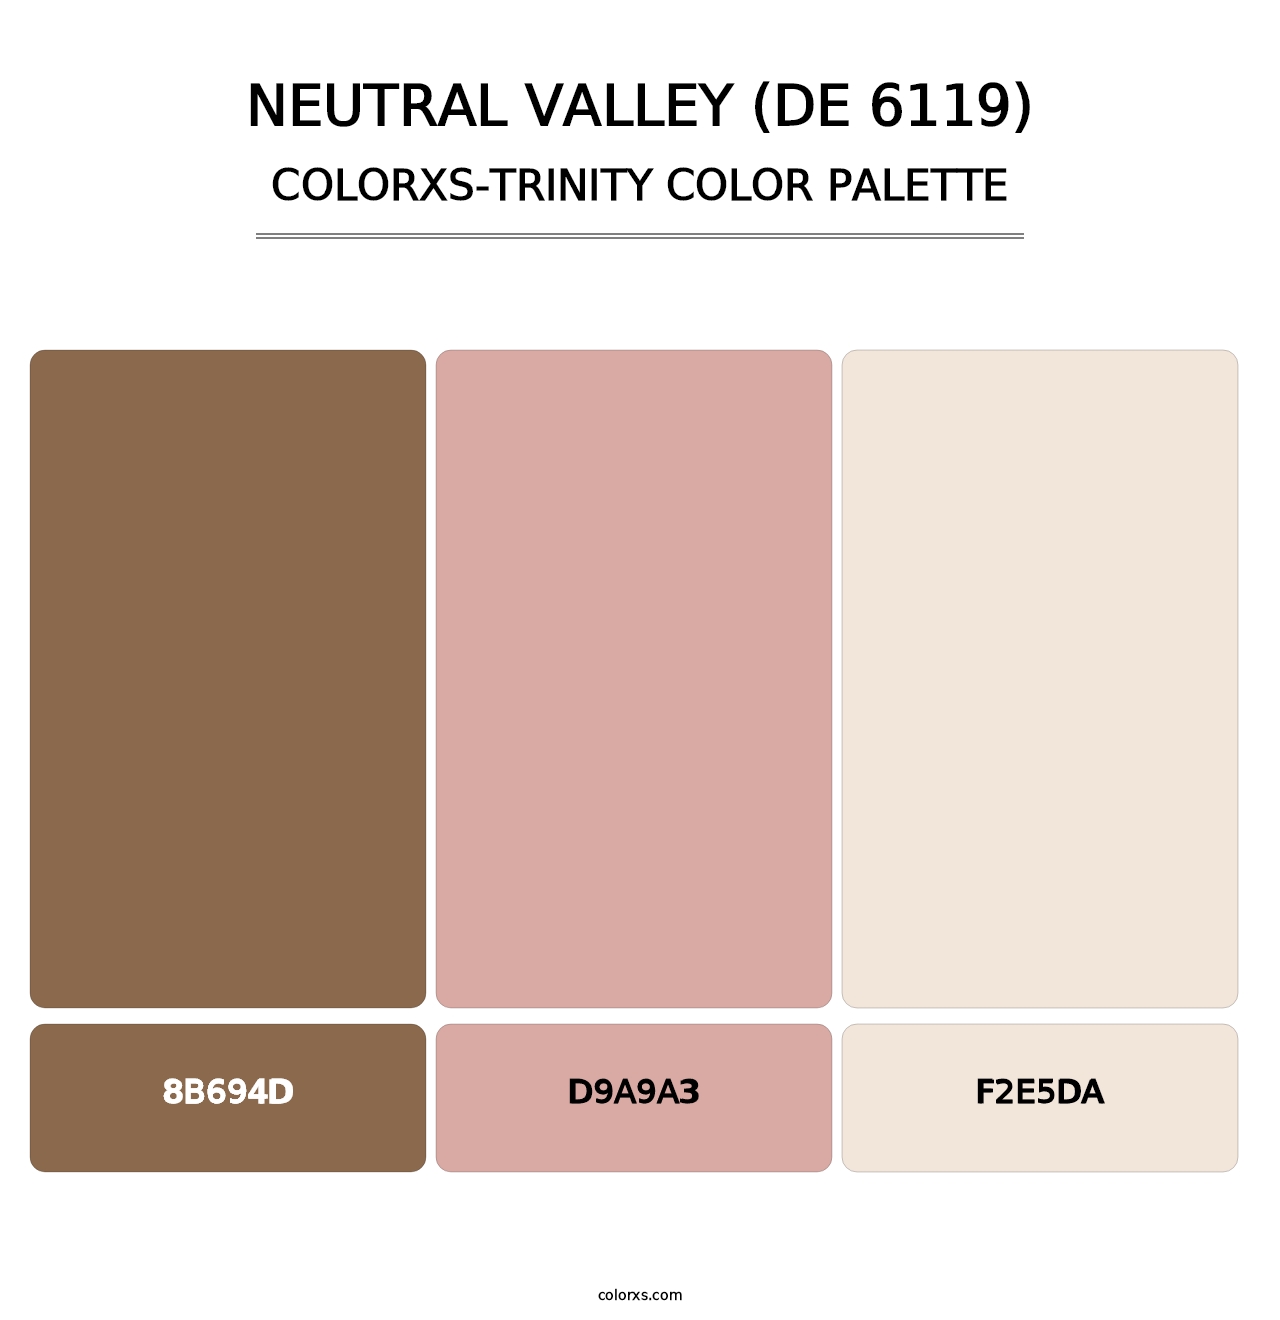 Neutral Valley (DE 6119) - Colorxs Trinity Palette